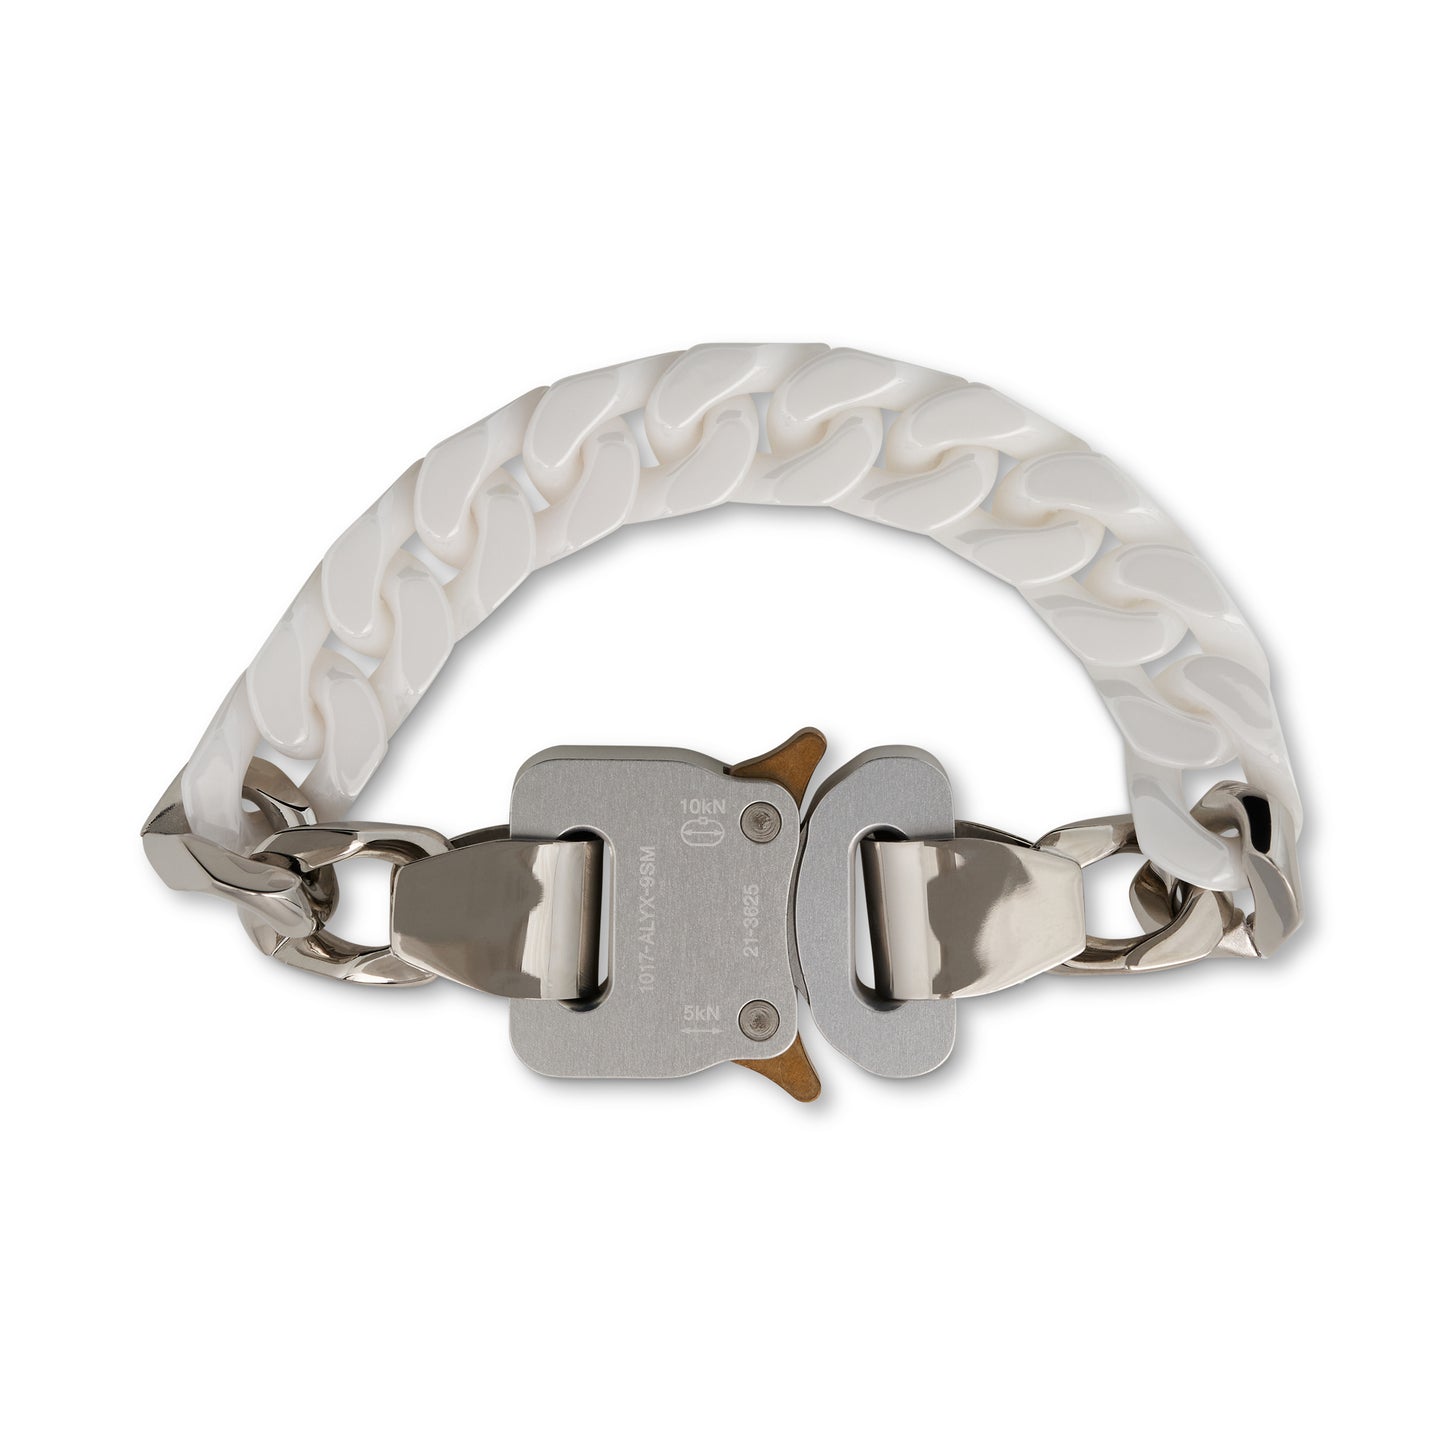 Ceramic Buckle Chain Bracelet in White